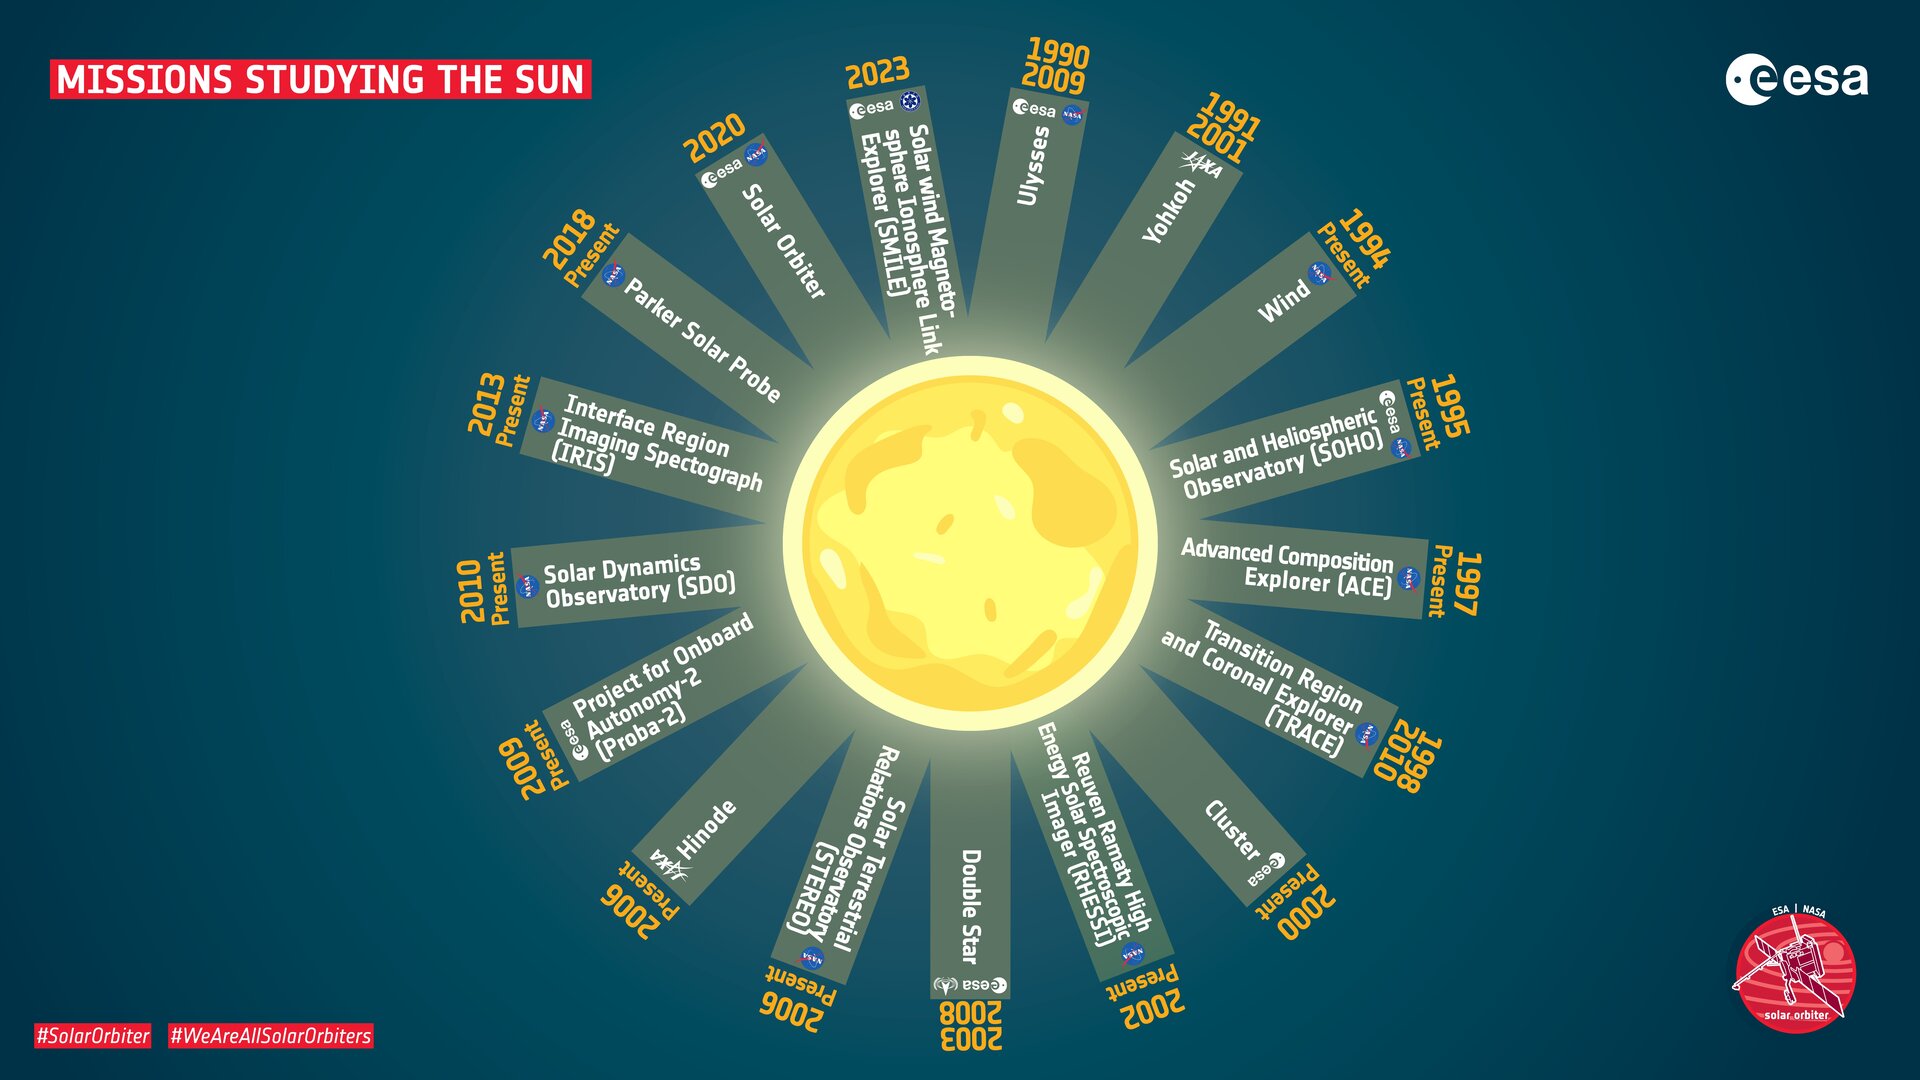 Überblick über die Missionen zur Untersuchung der Sonne und des Sonnenwindes sowie der Beziehungen zwischen Erde und Sonne